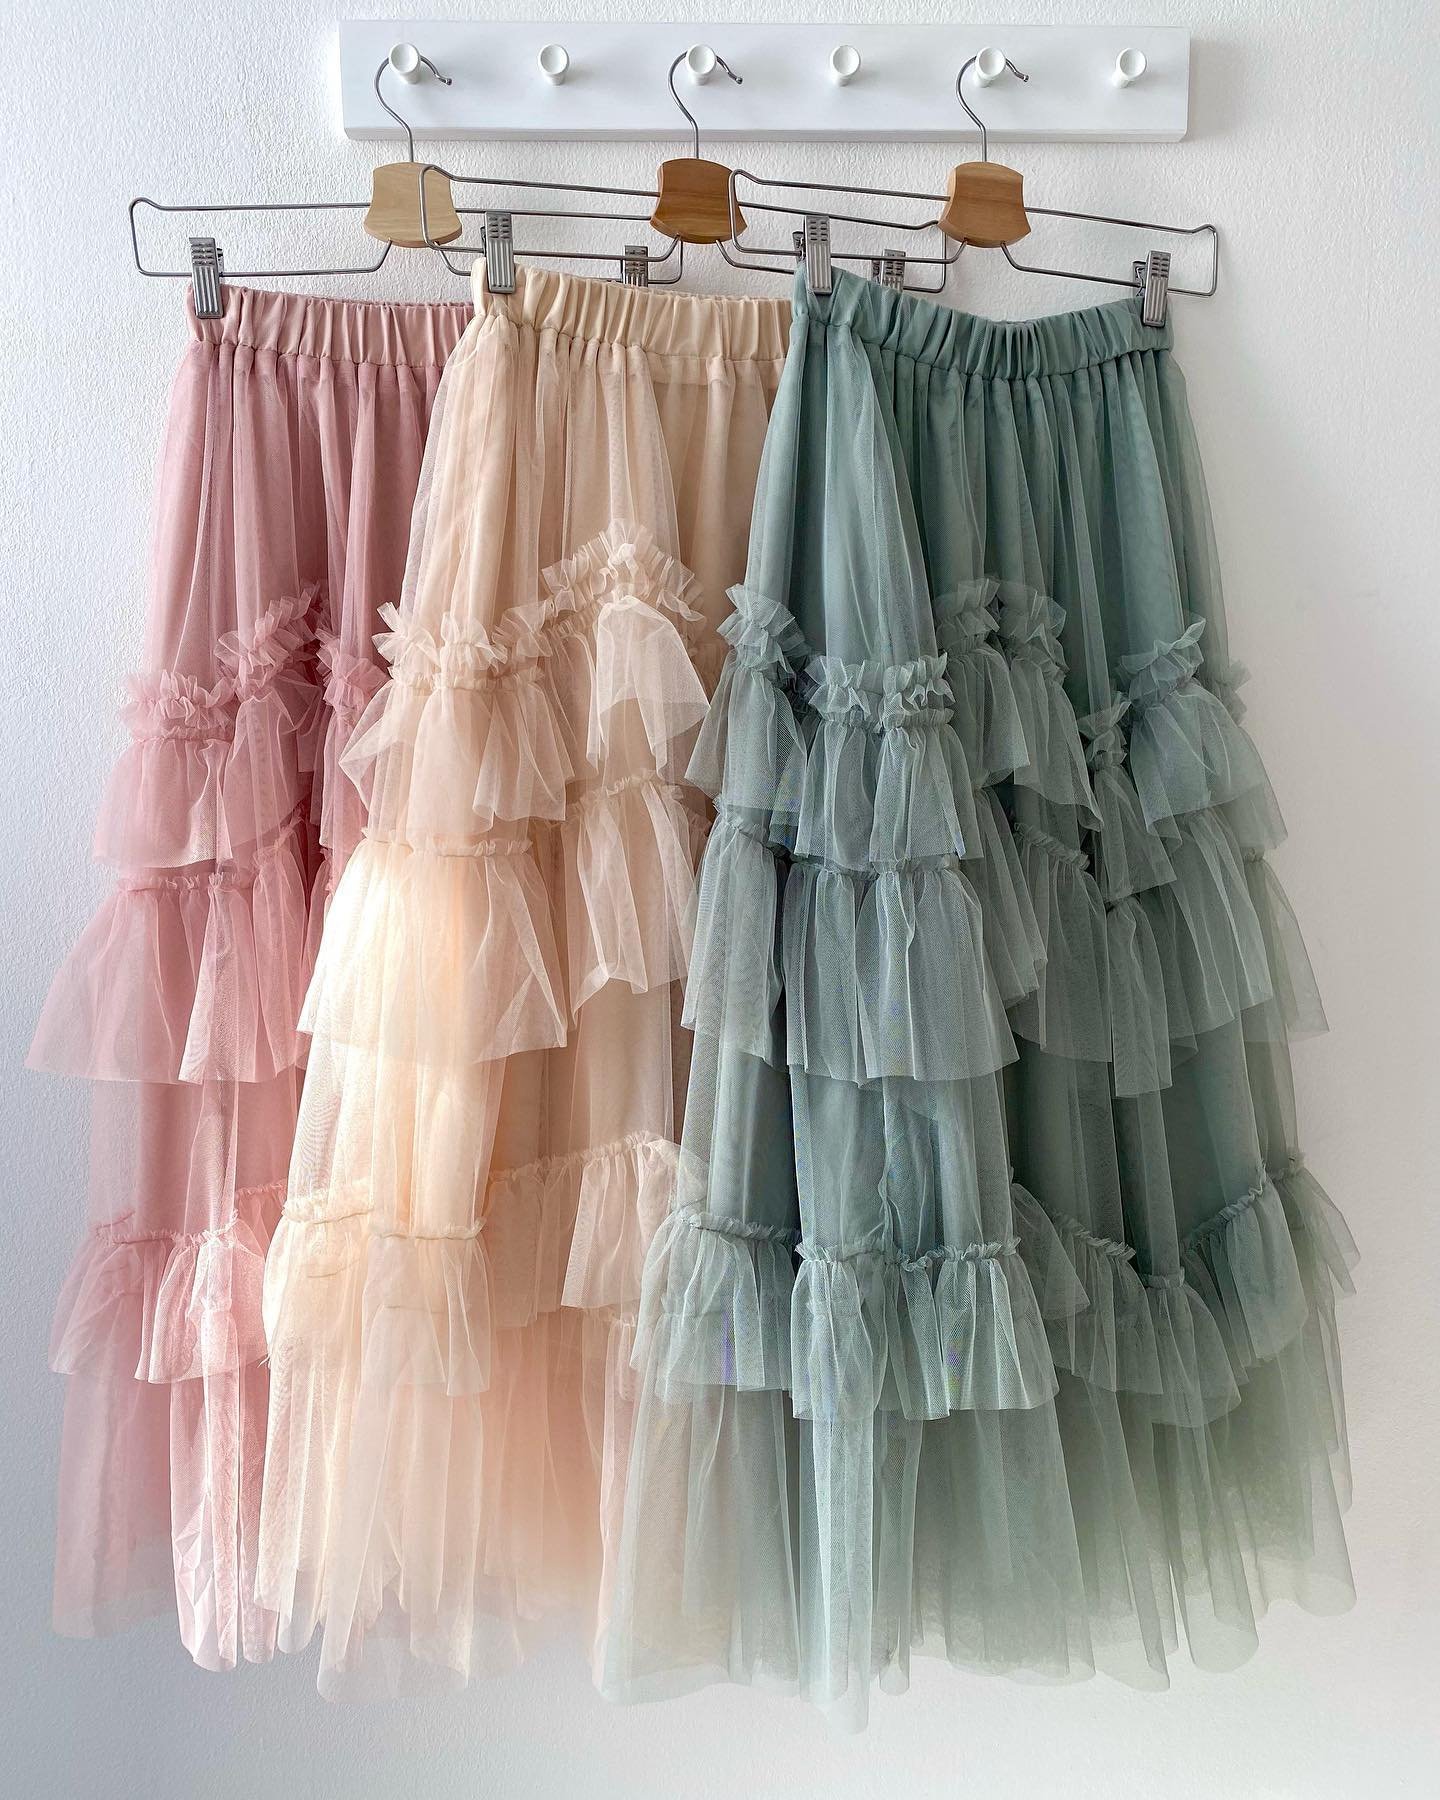 NOVINKA ❣️ Na eshop sme si doplnili nové tylové sukničky. 😍Nadychané sukne v krásnych farebných odtieňoch. Nebojte sa ich kombinovať s tričkom s nápisom, košeľou alebo body. 😉 Ružová tylová sukňa Terra Béžová tylová sukňa Terra Bledozelená tylová sukňa Terra